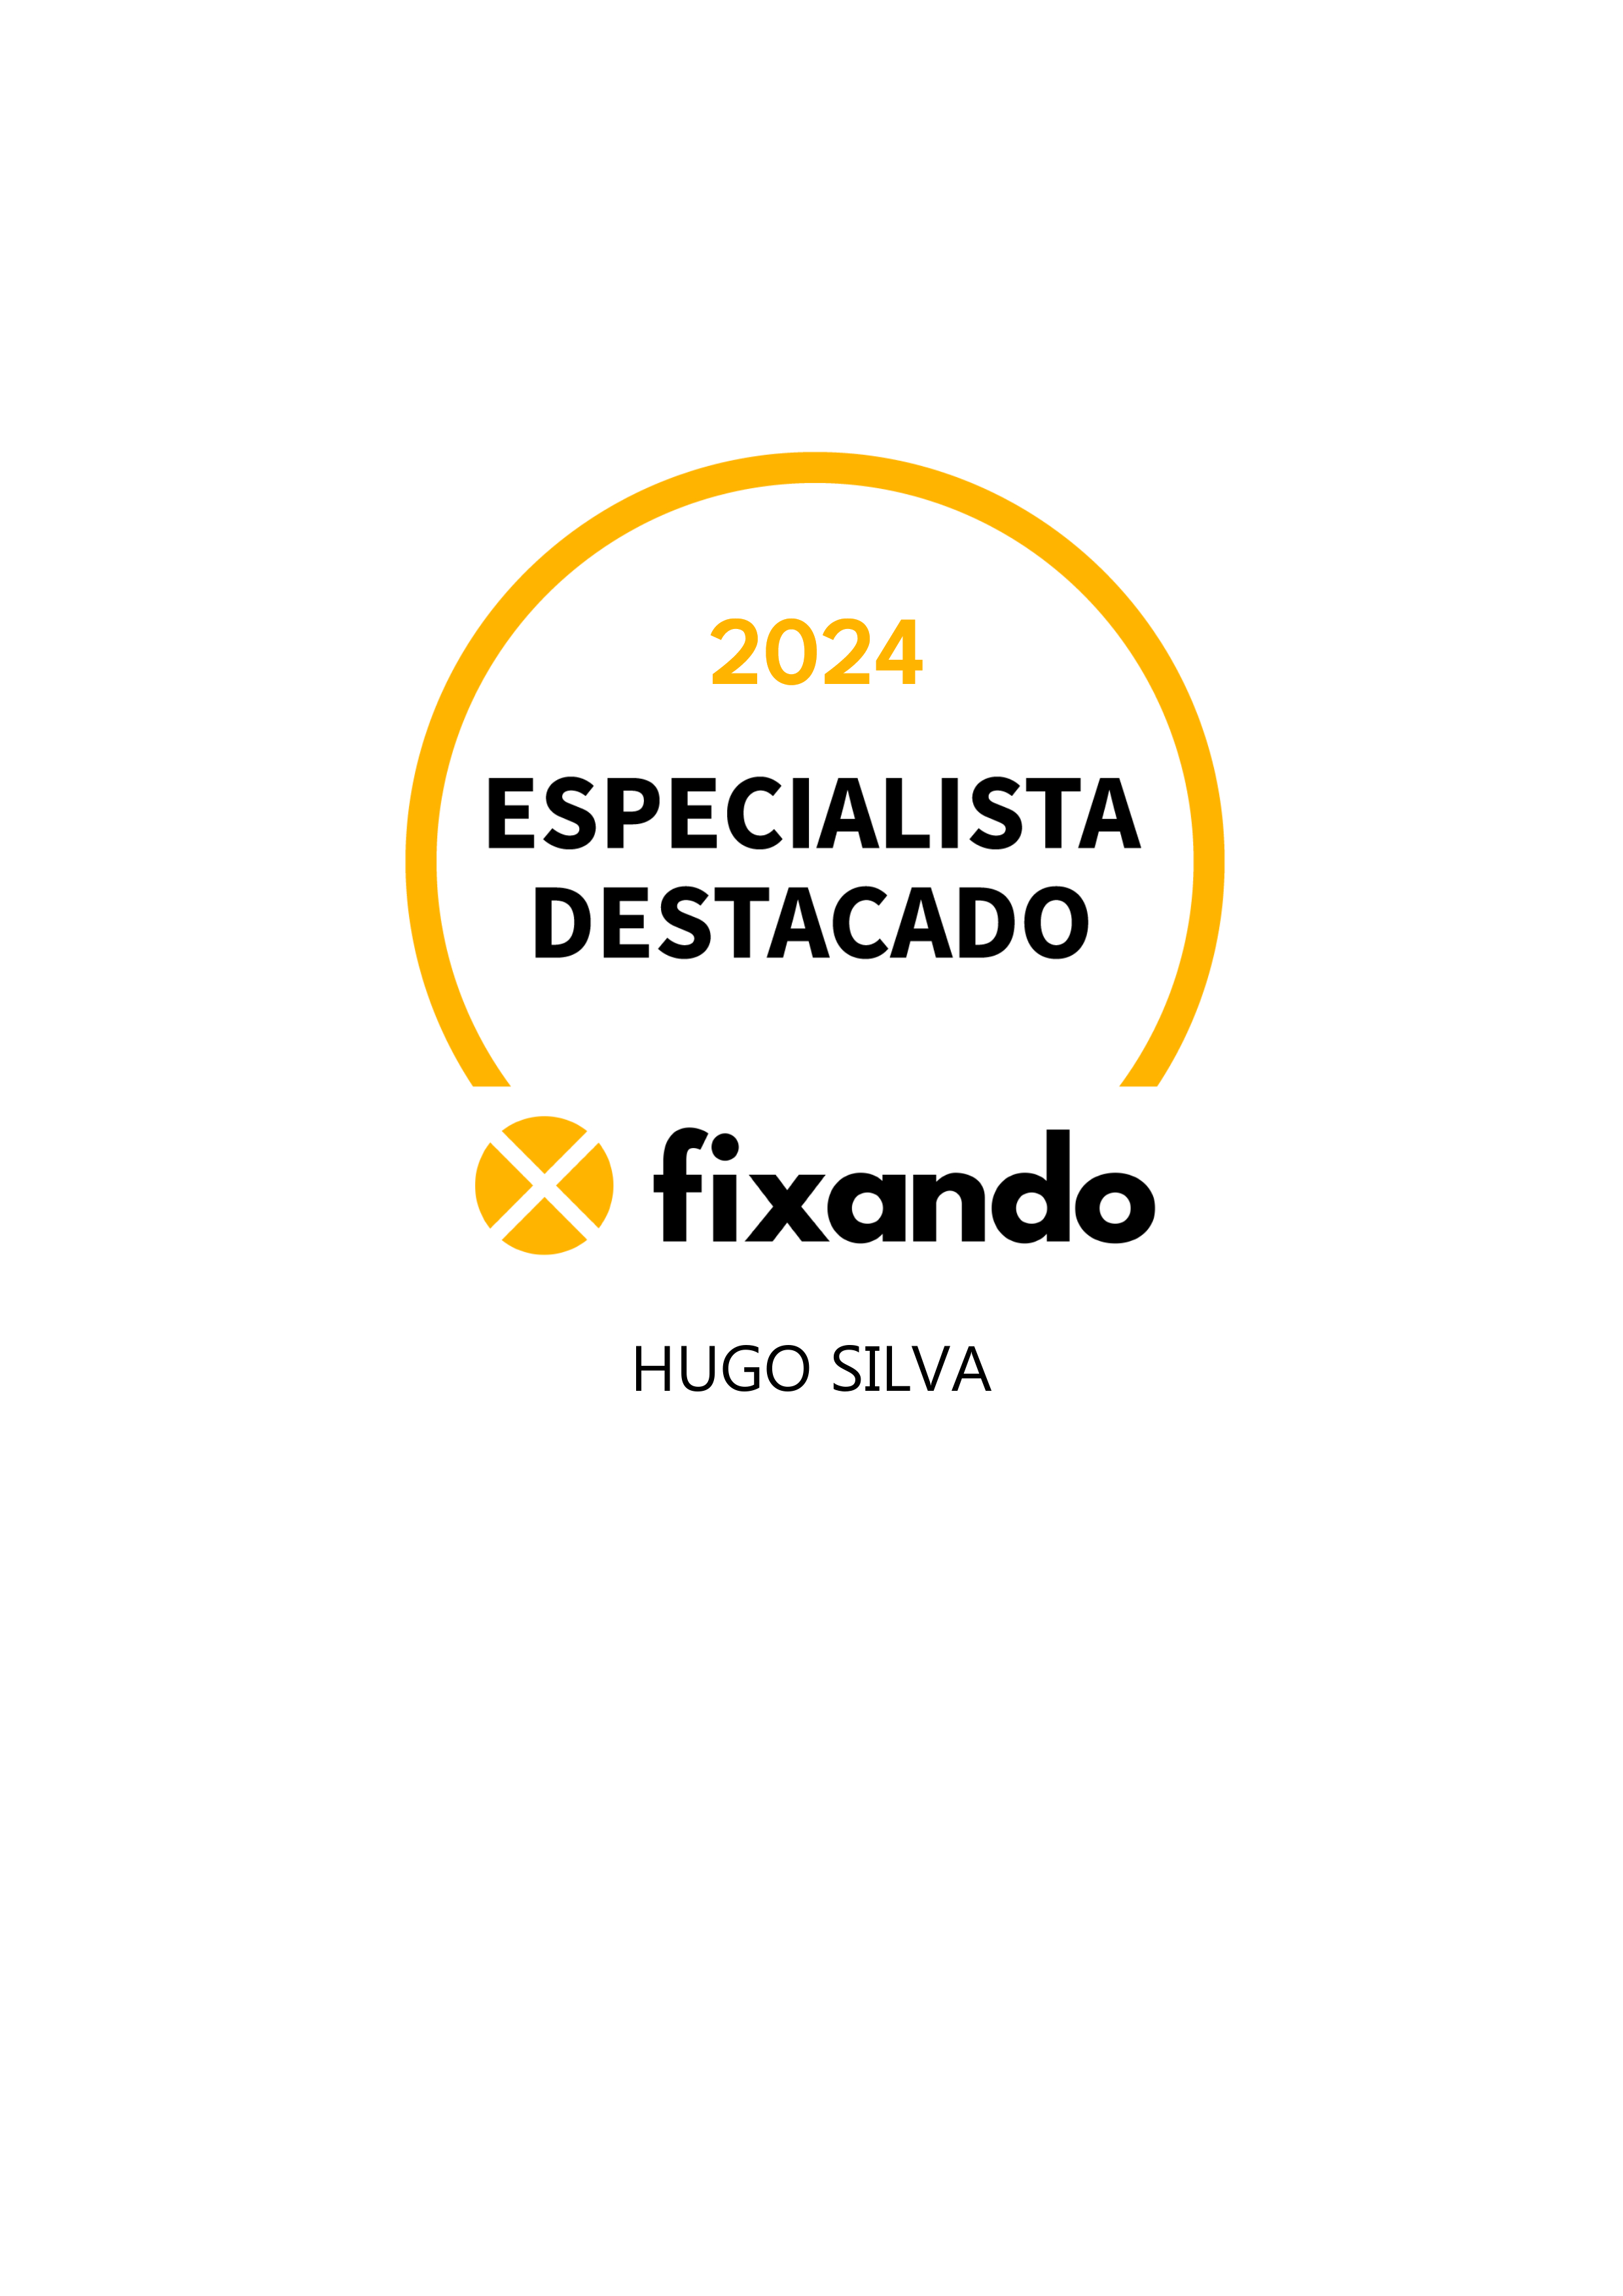 Hugo Silva - Barcelos - Desenvolvimento de Aplicações iOS